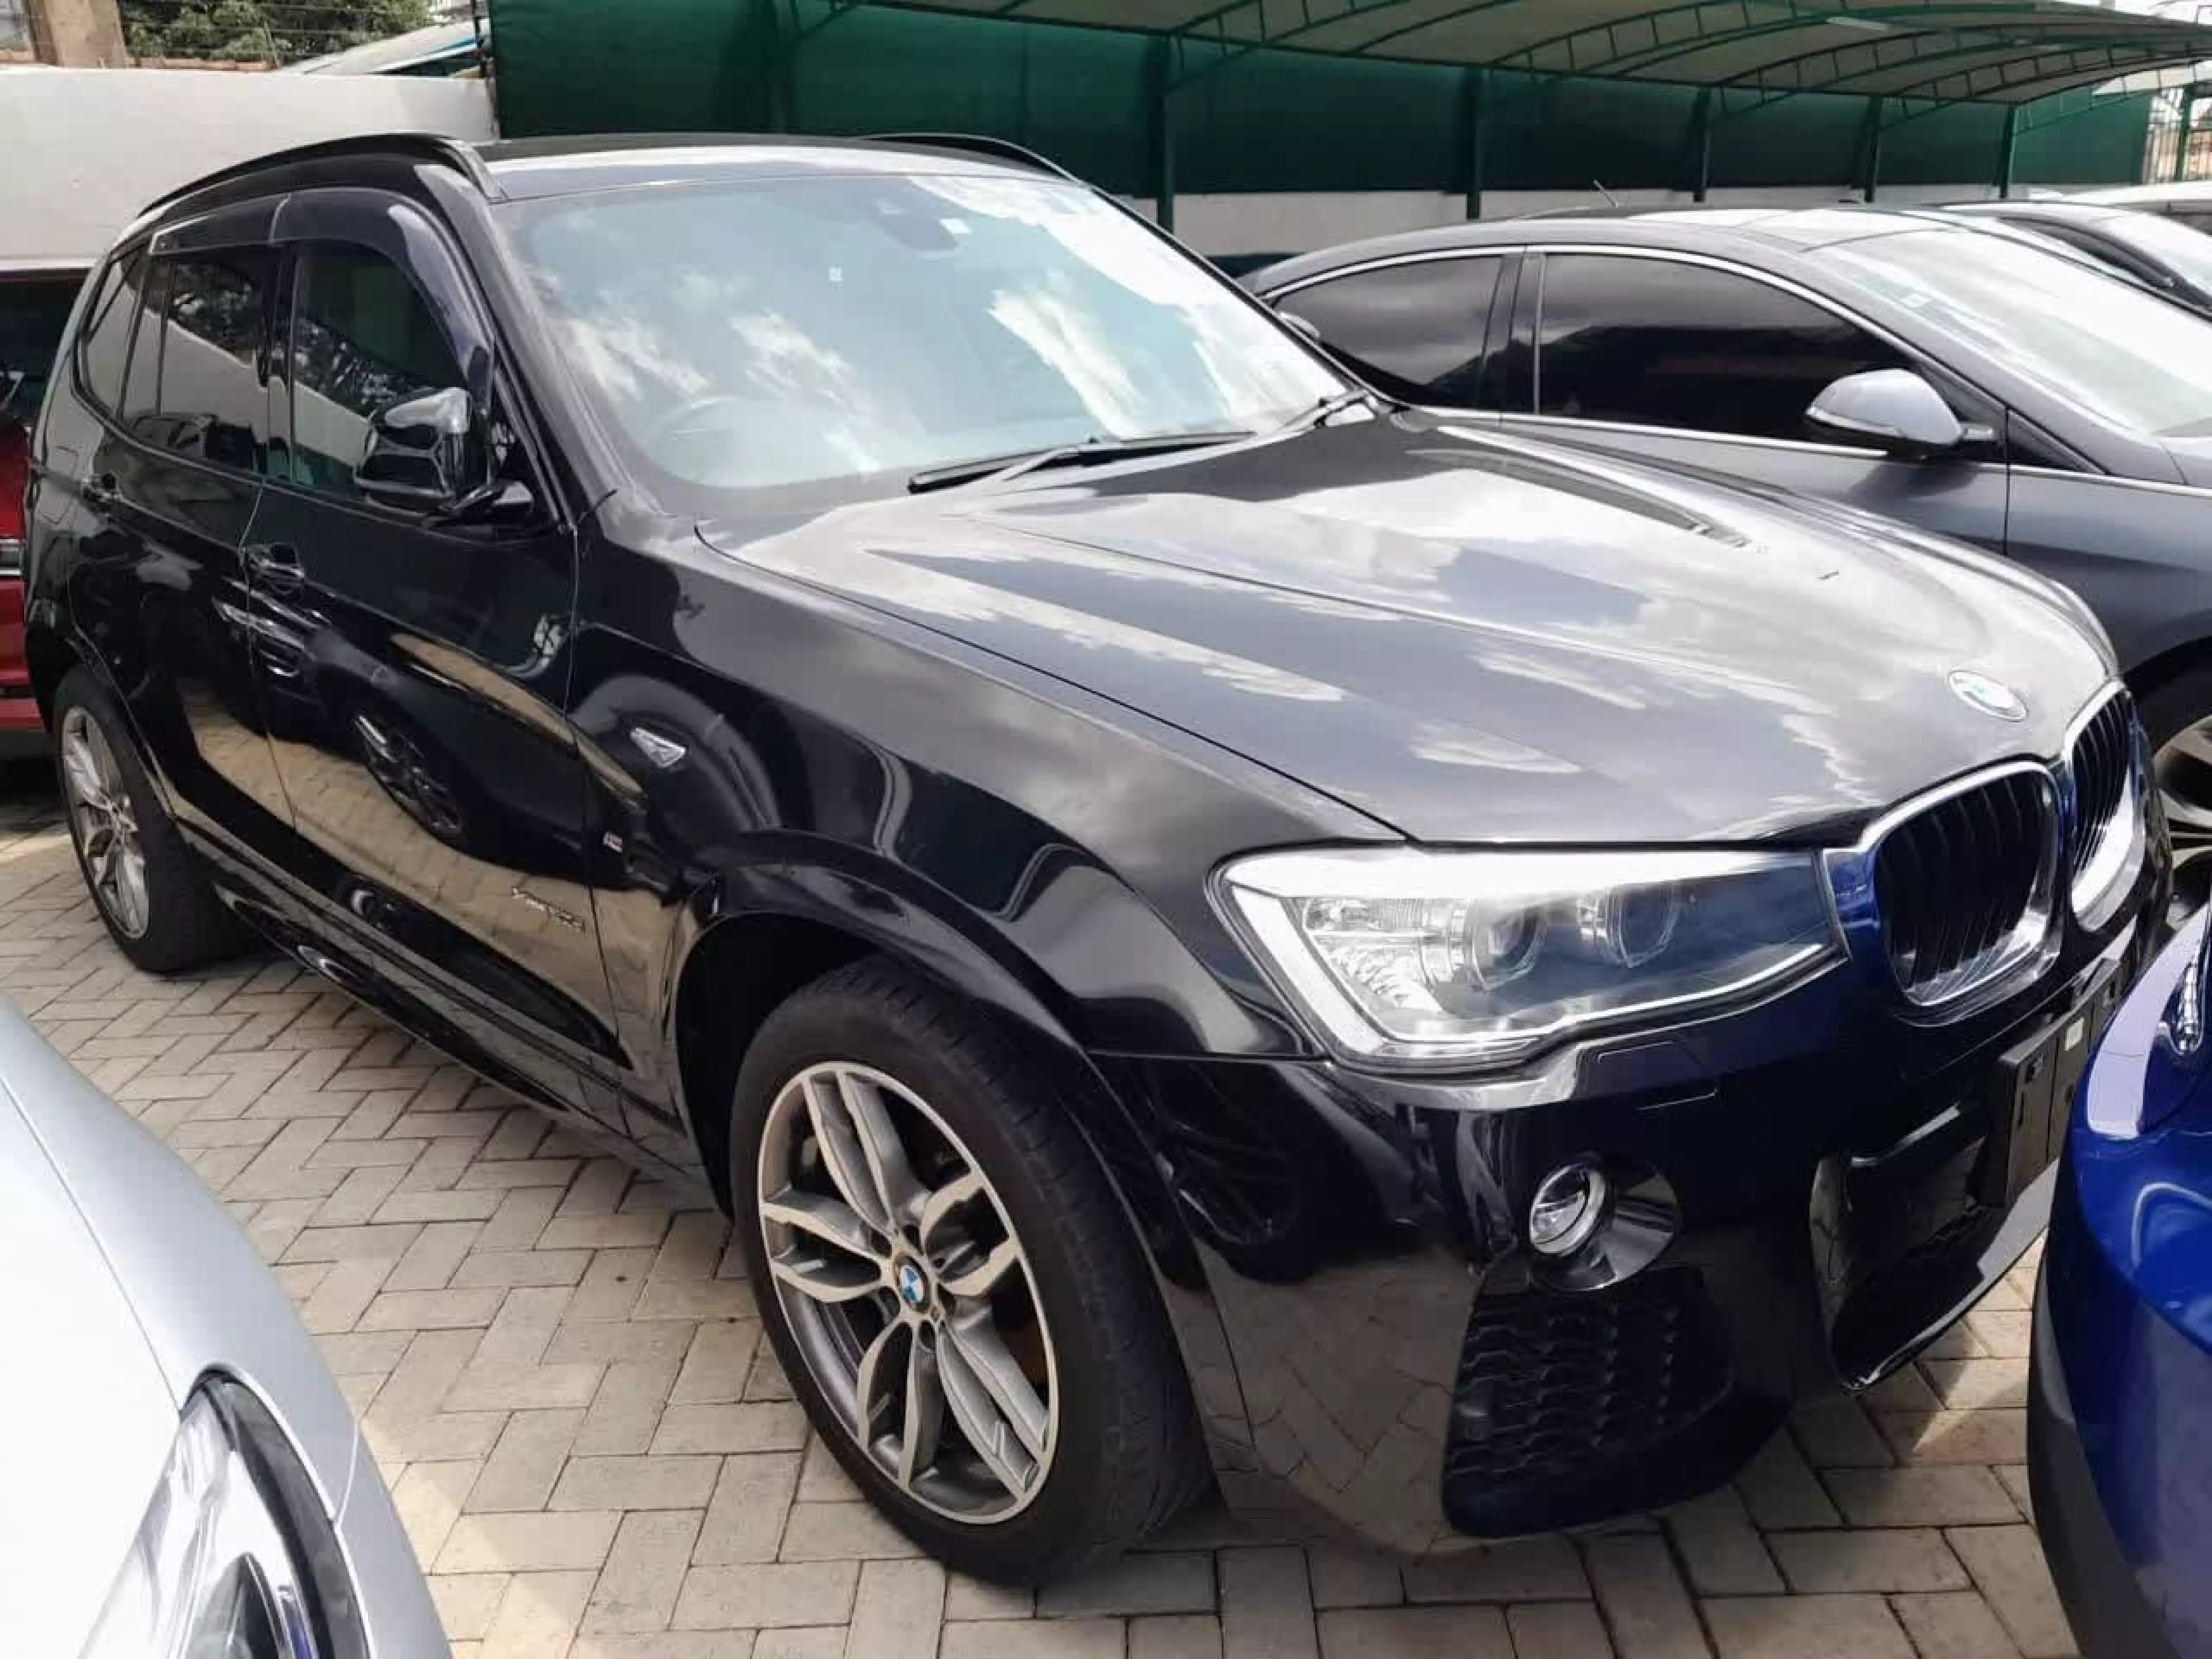 BMW X3 - 2016